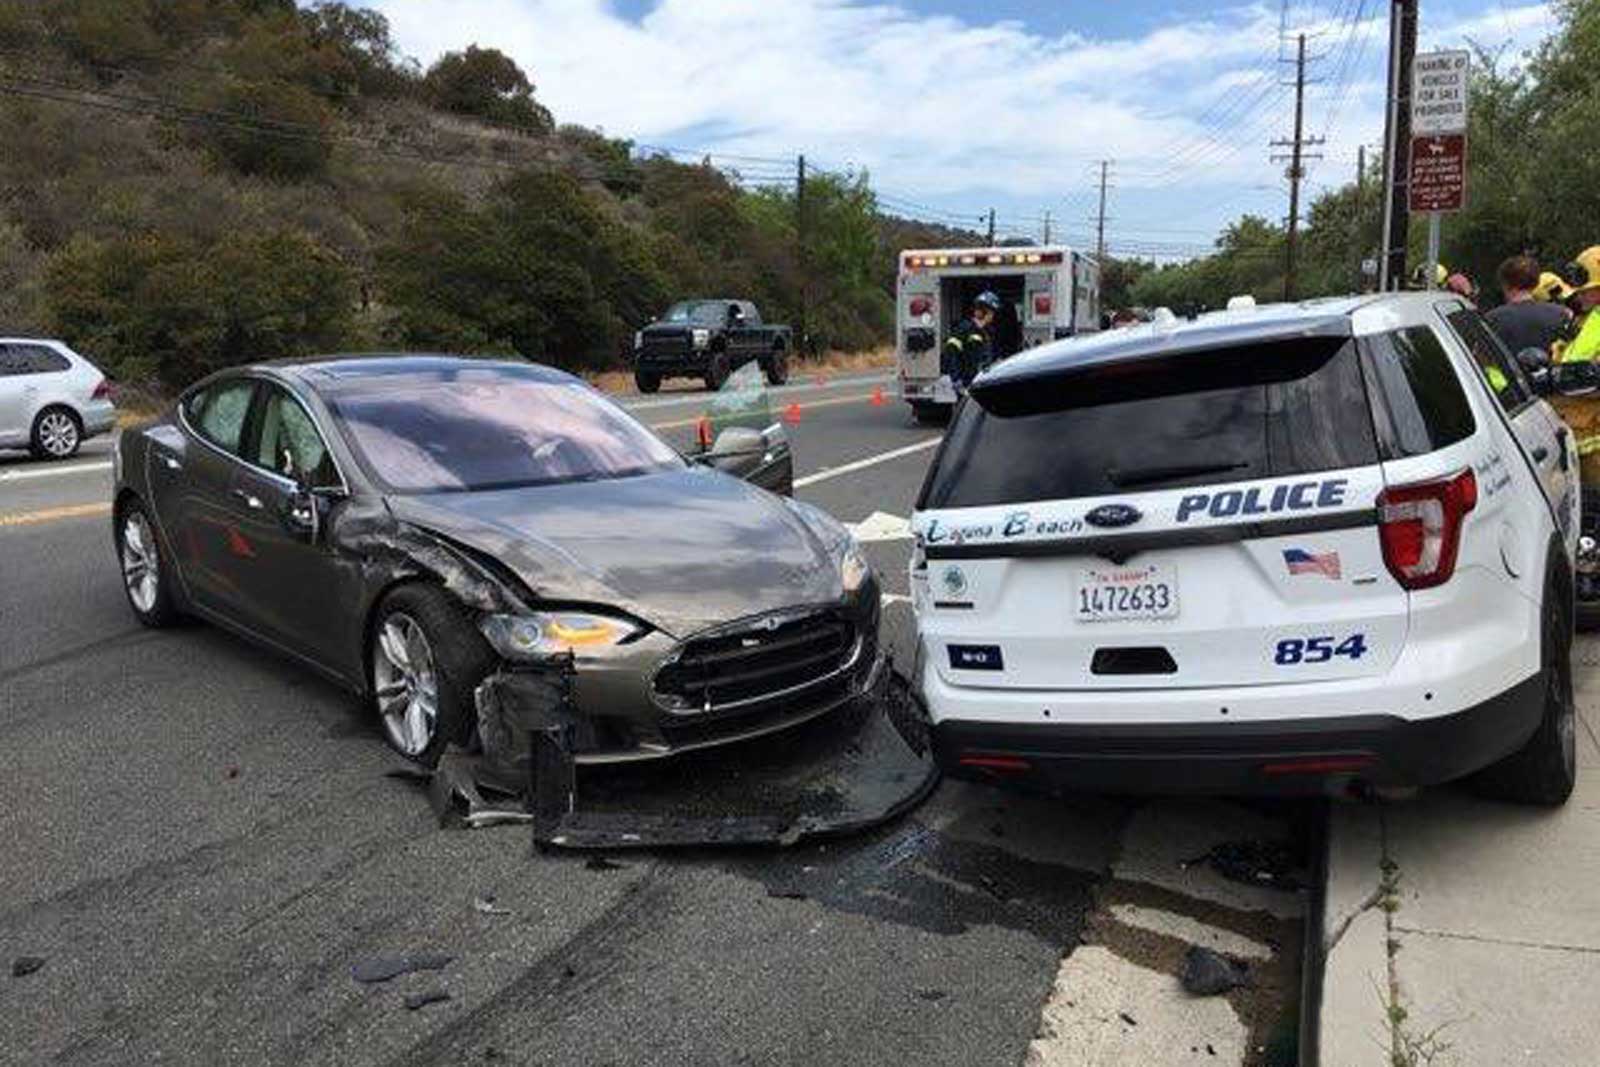 Otro Tesla se estrella, esta vez contra un coche patrulla...que estaba aparcado.